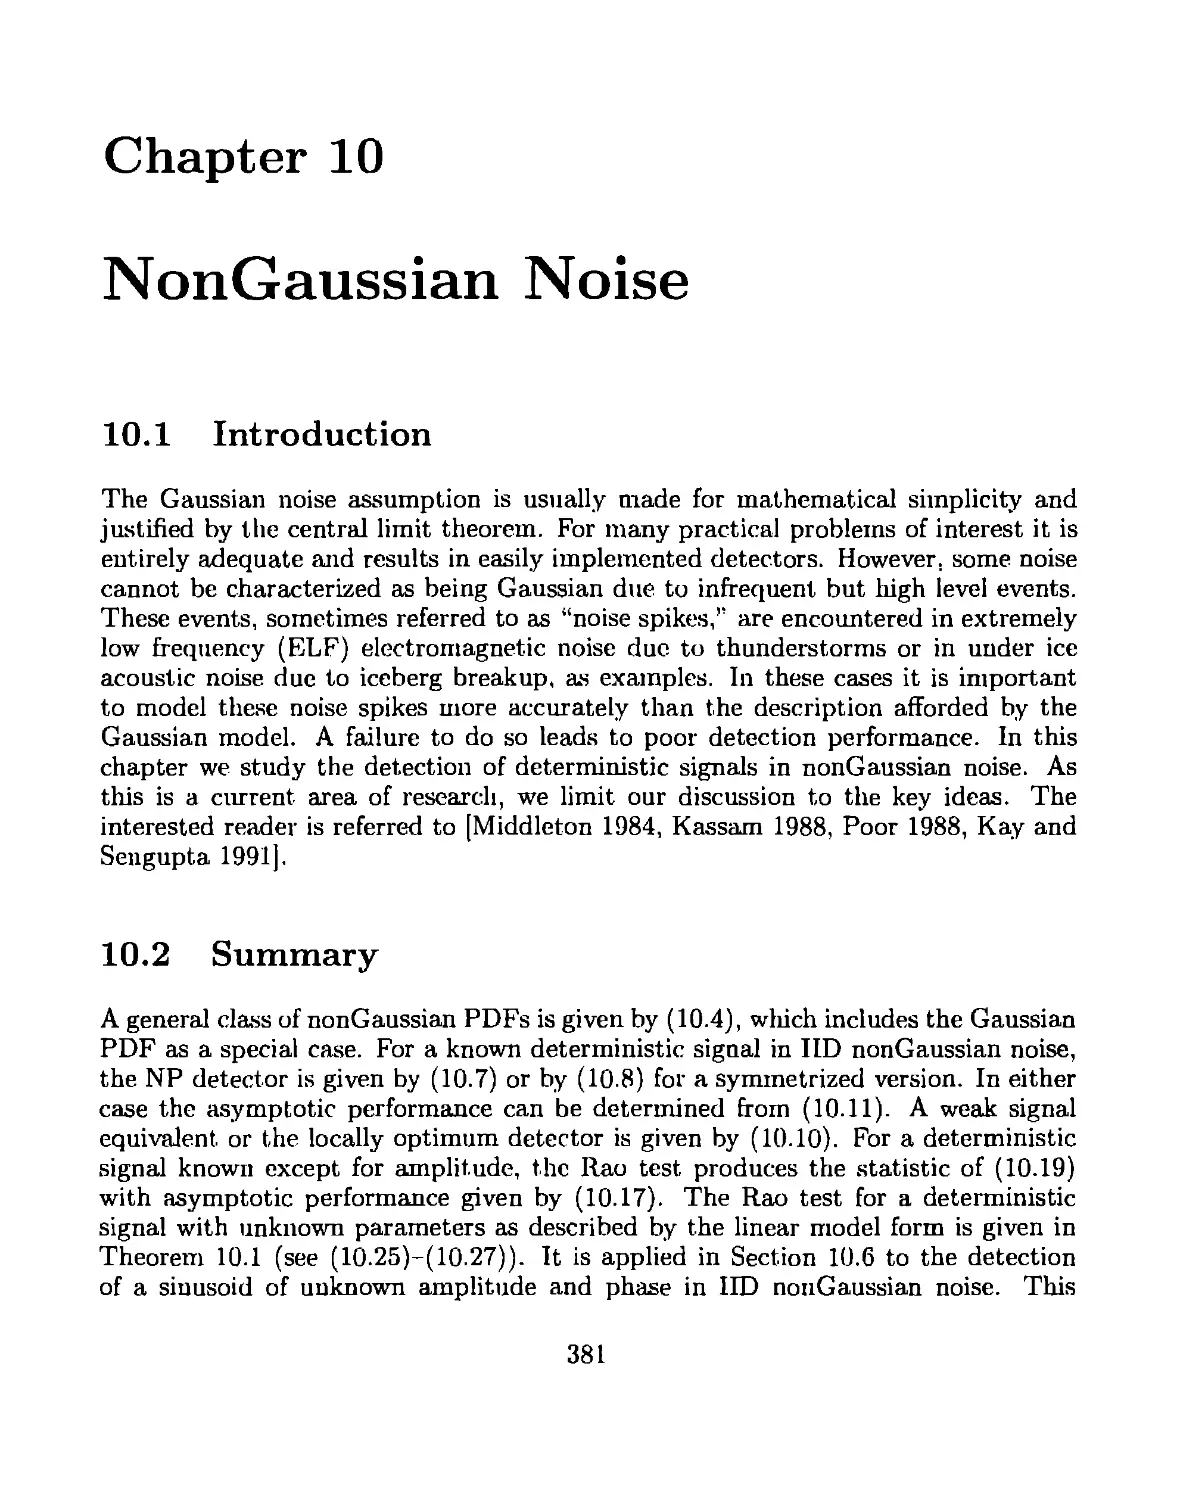 10 NonGaussian Noise
10.2 Summary